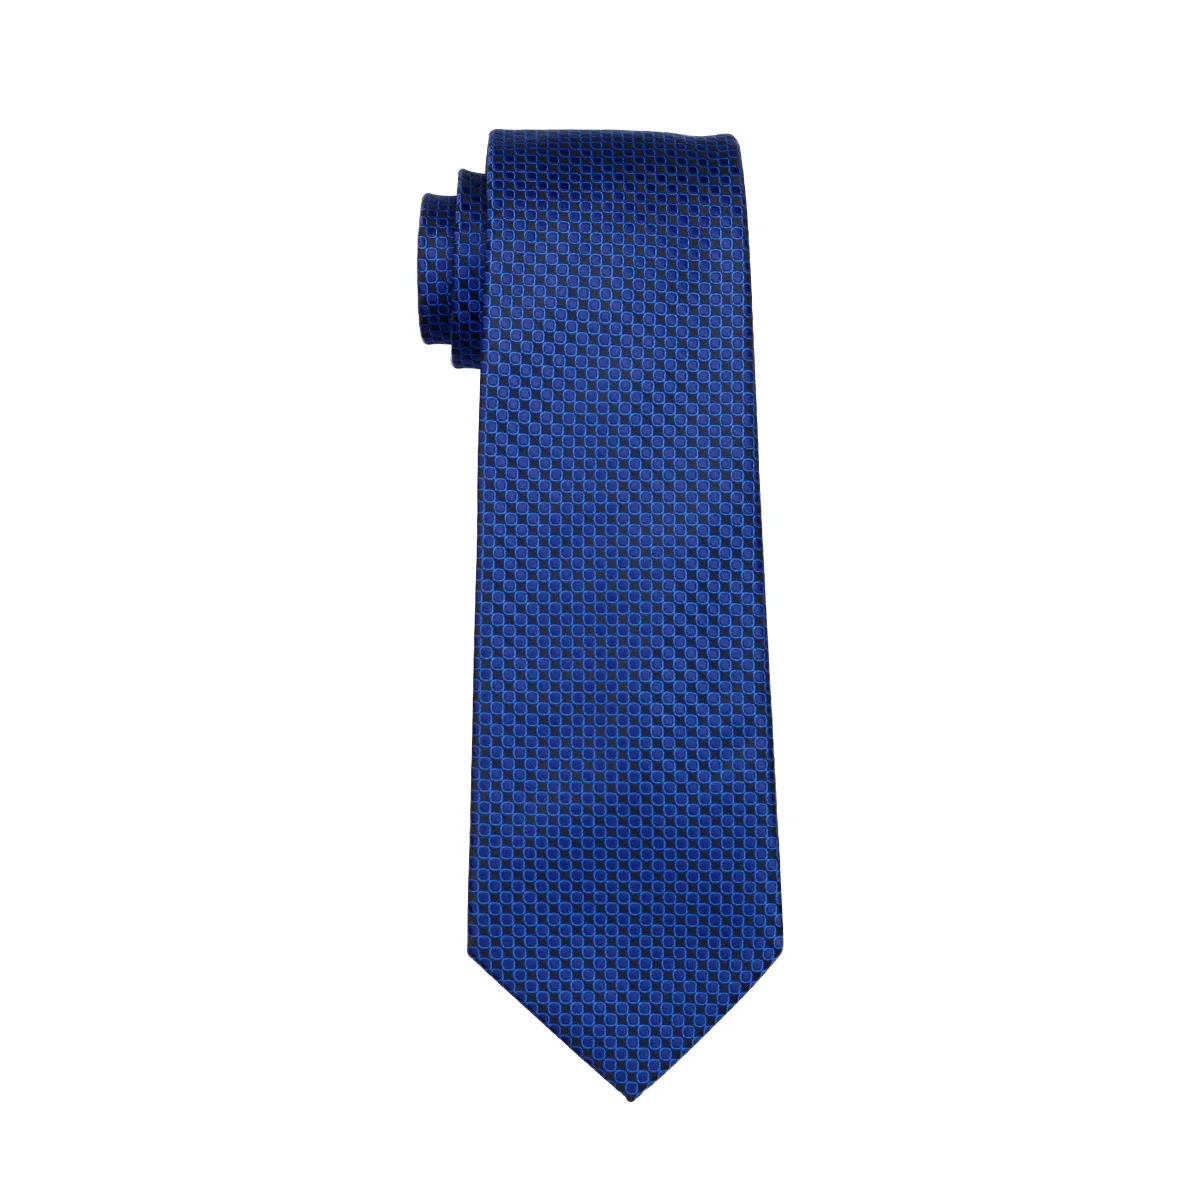 FA-881 мужской галстук Синий Геометрический шелковый галстук классический галстук Hanky запонки набор галстуков для мужчин Бизнес Свадебная вечеринка